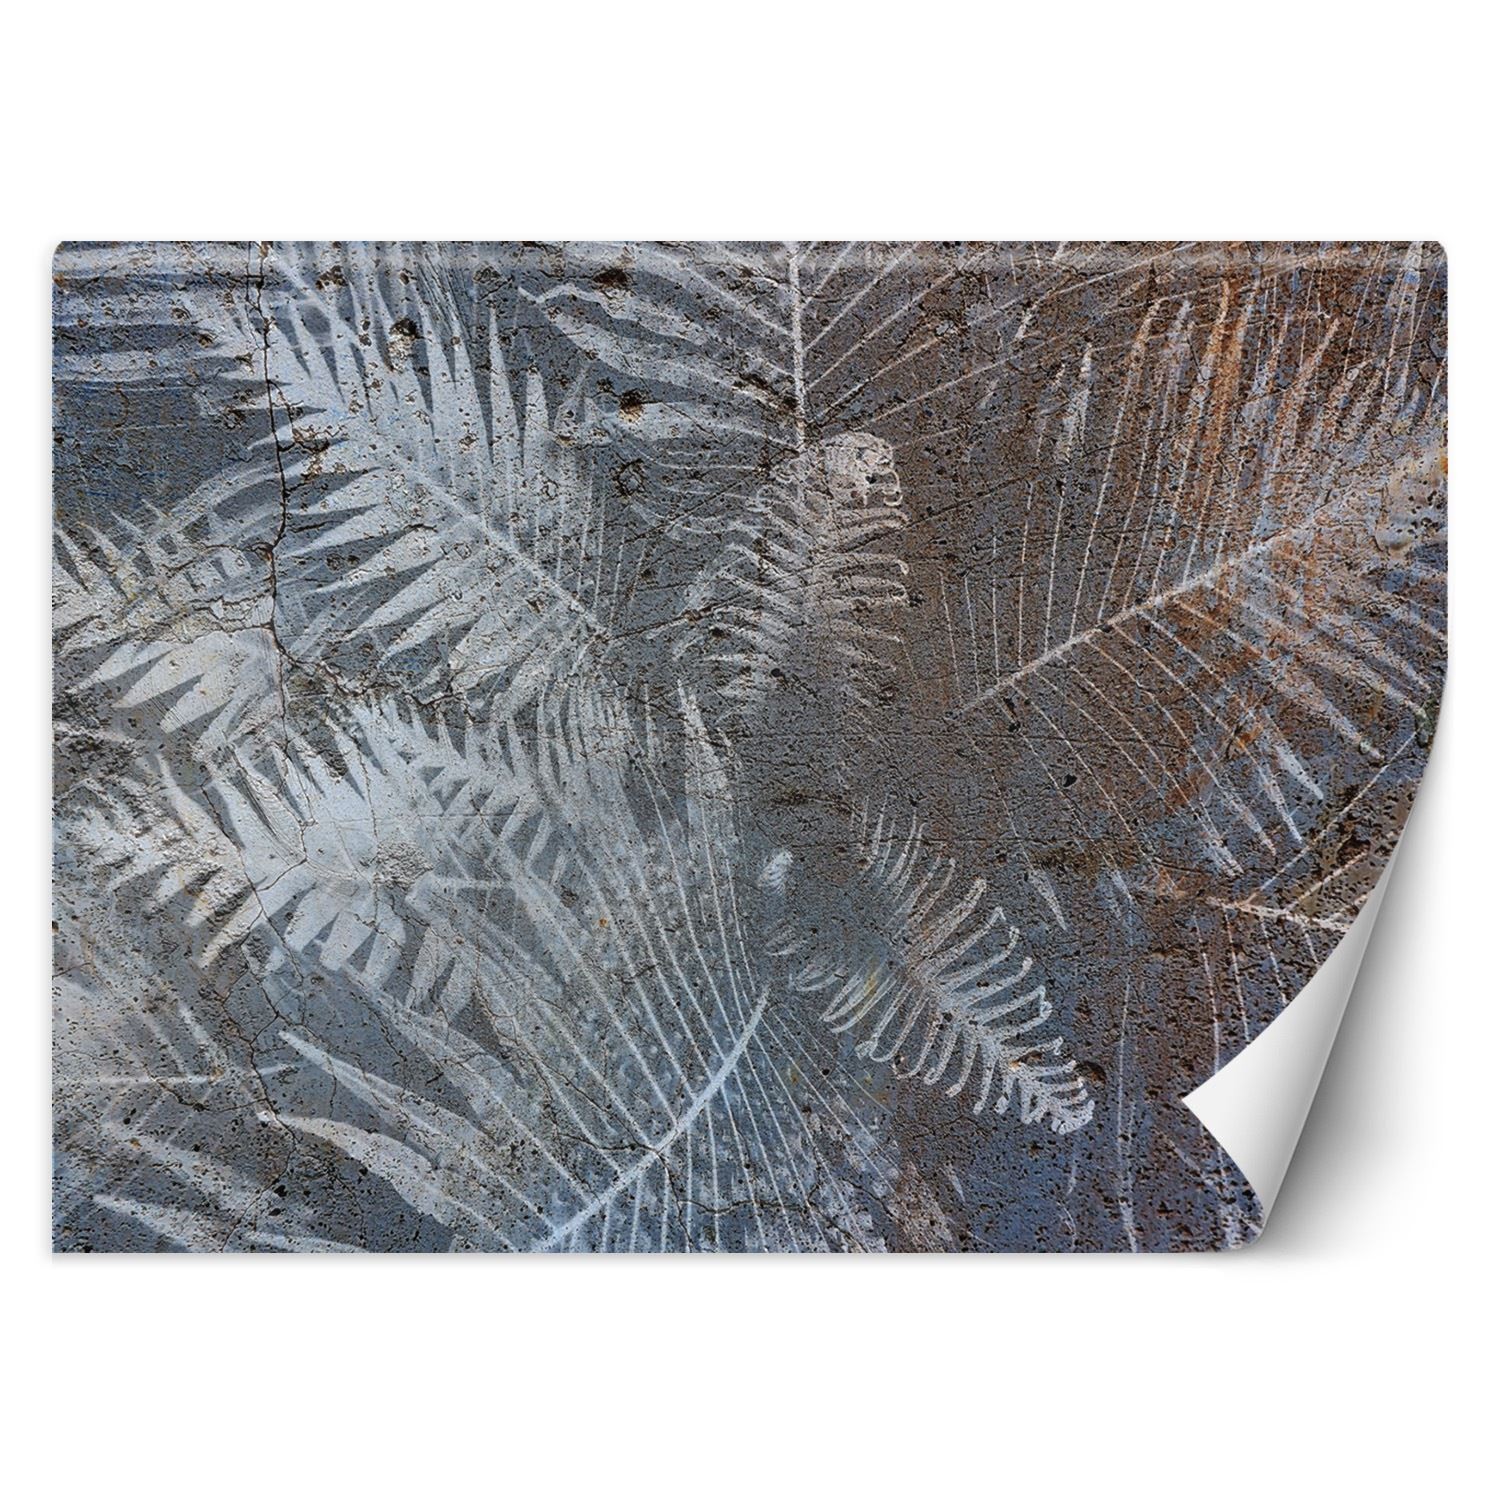 Trend24 – Behang – Palmblaadjes Op Beton – Behangpapier – Behang Woonkamer – Fotobehang – 250x175x2 cm – Incl. behanglijm